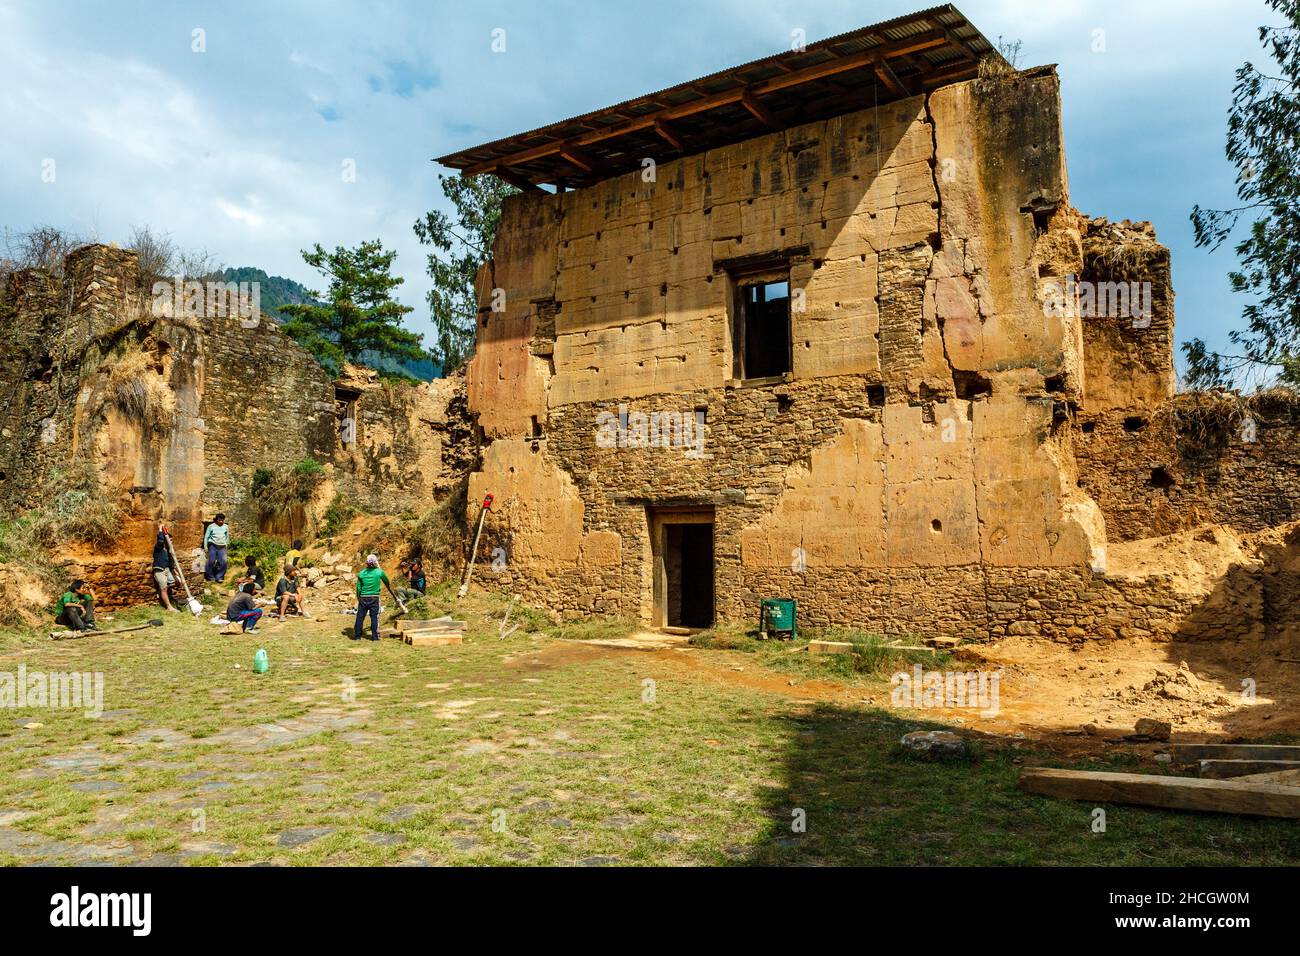 Ruins of the Drukgyel Dzong in Paro, Western Bhutan, Asia Stock Photo